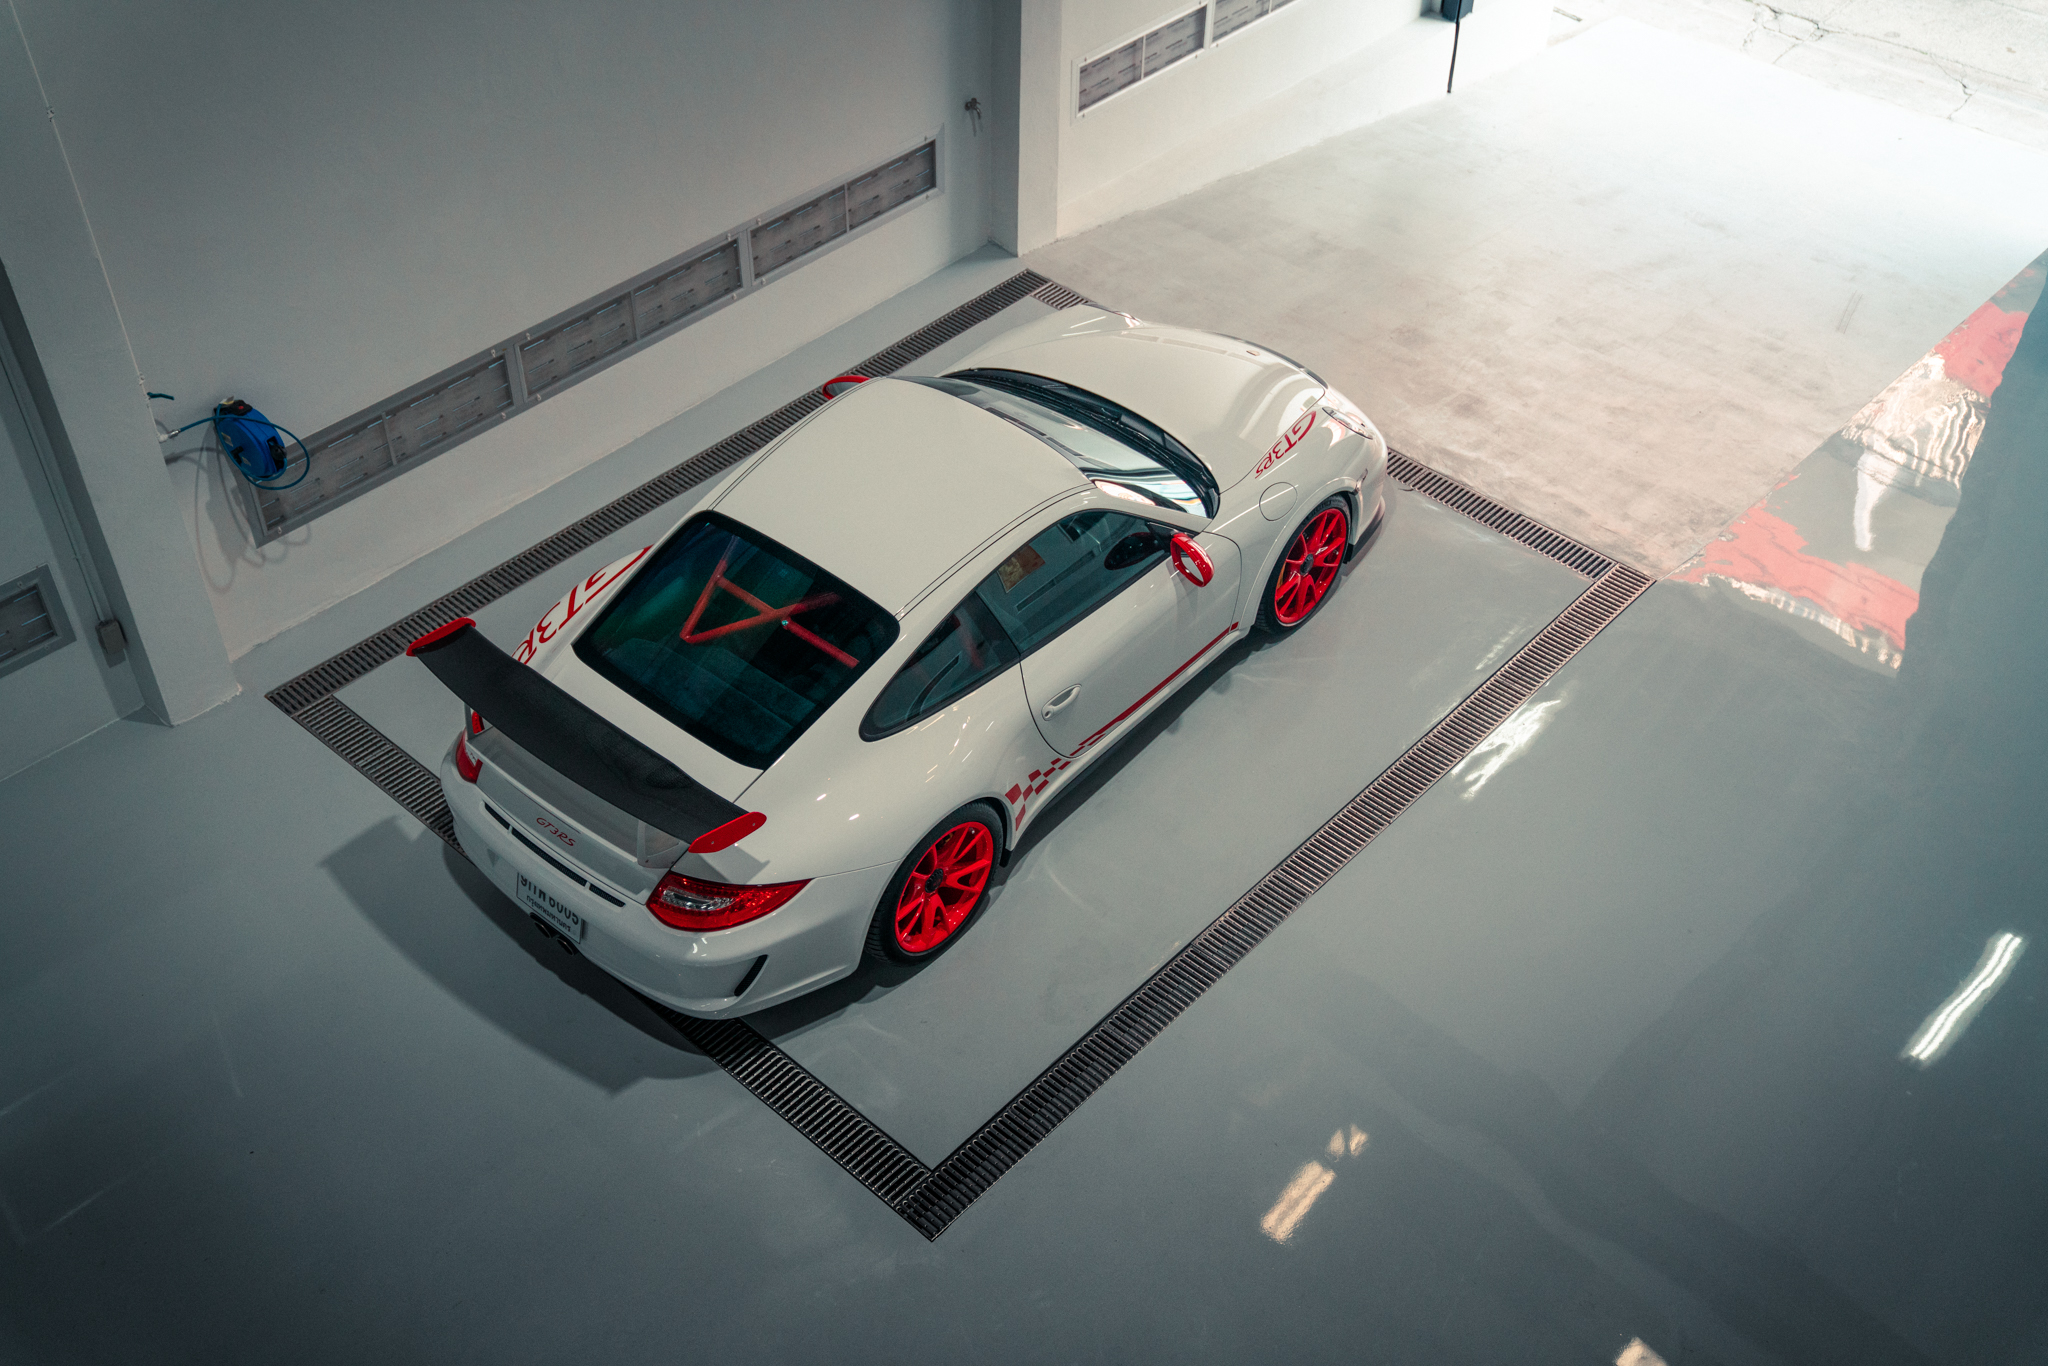 White Porsche 911 GT3 RS with red trim in garage